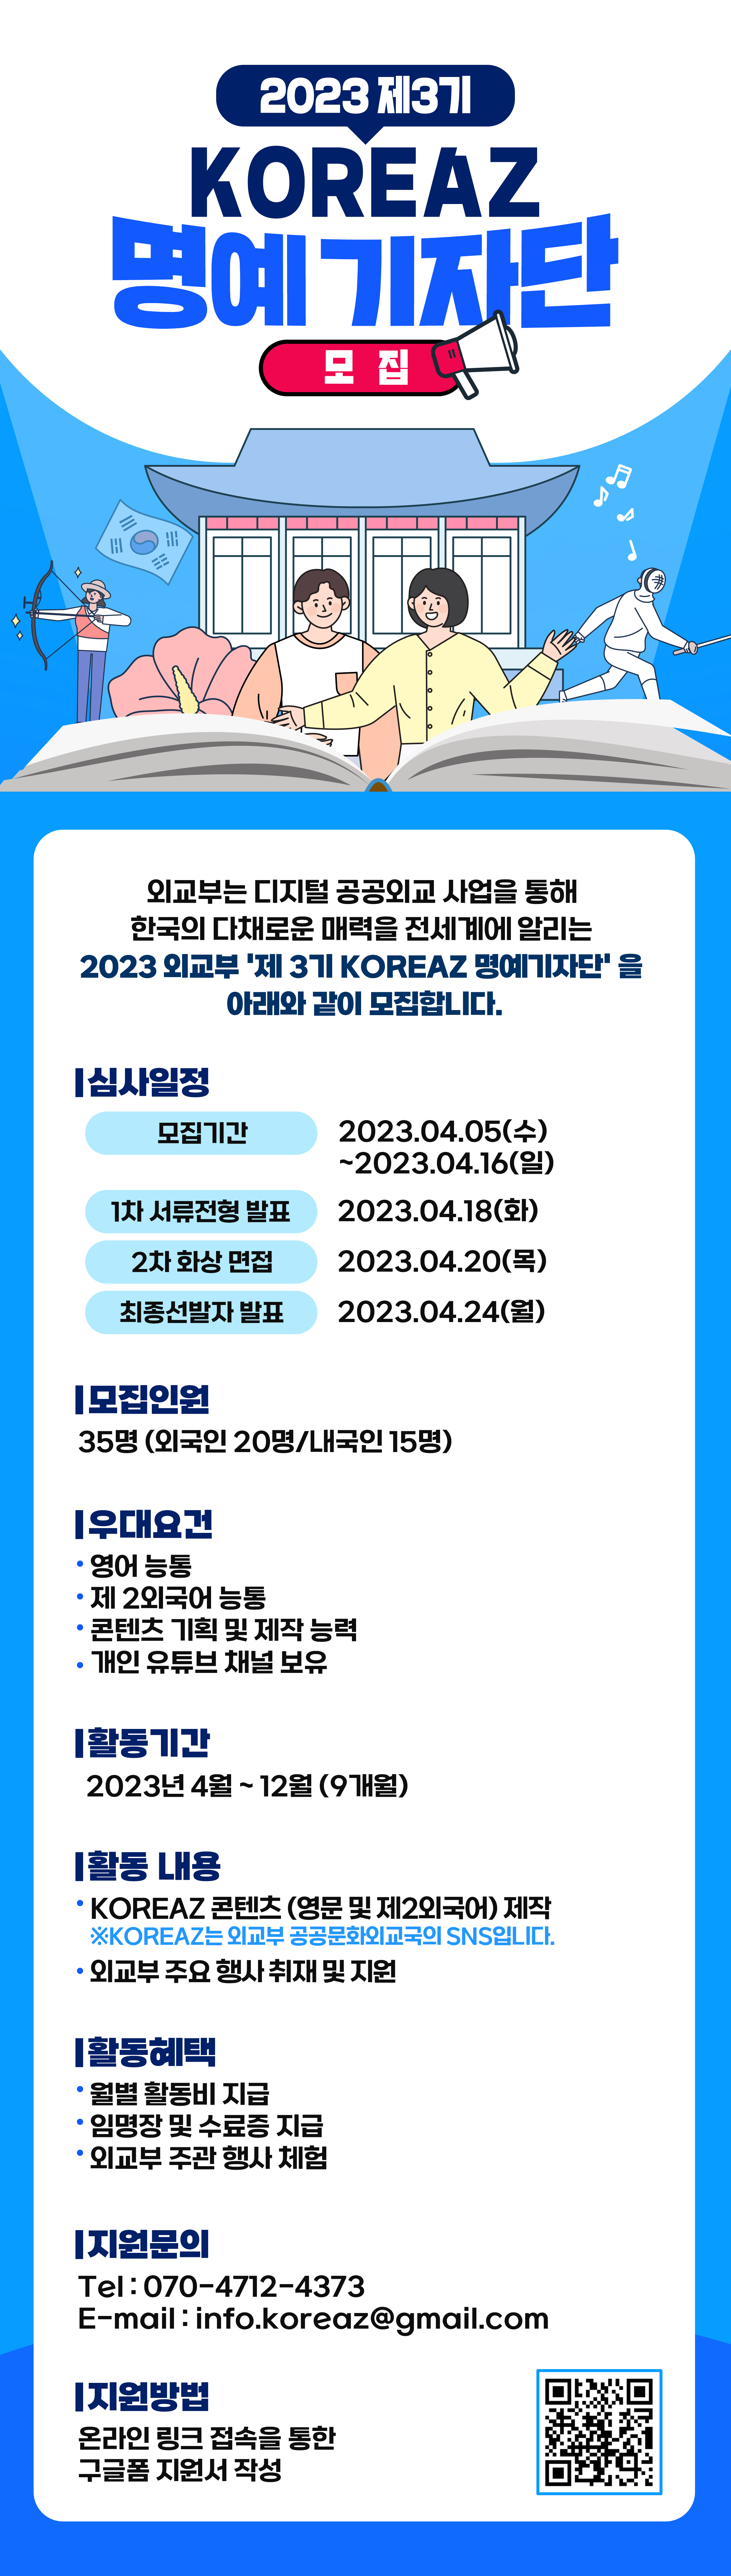 외교부 2023 제3기 KOREAZ 명예기자단 모집 안내(2023 KOREAZ Honorary Reporters Recruitment)